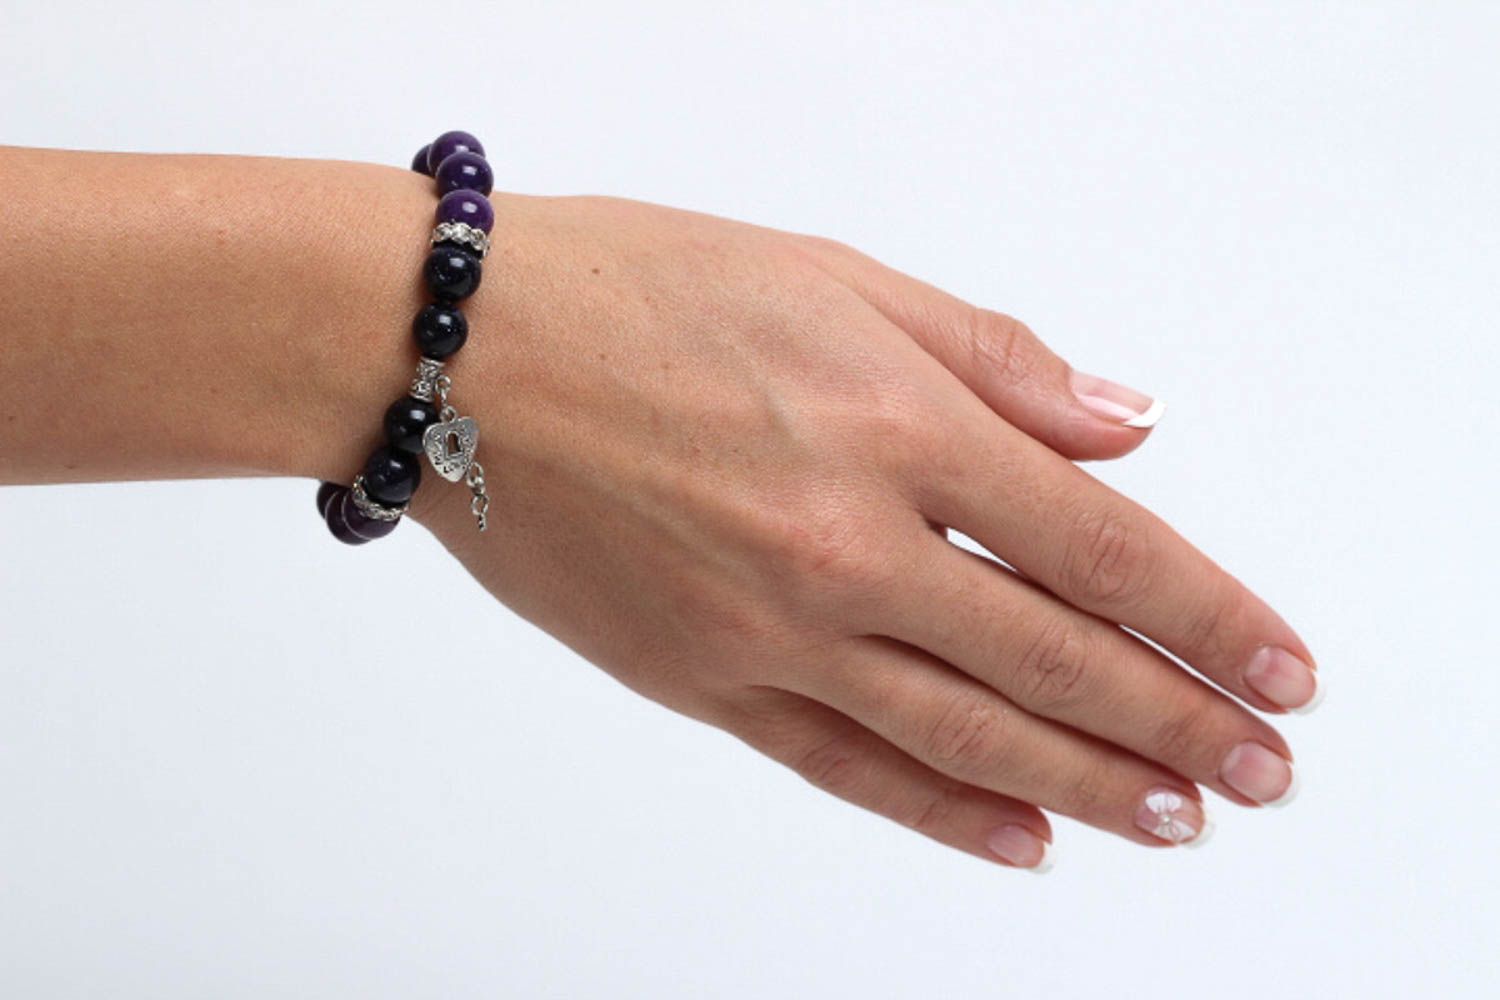 Браслет из бусин хэнд мейд фиолетовый браслет на руку женский аксессуар фото 5